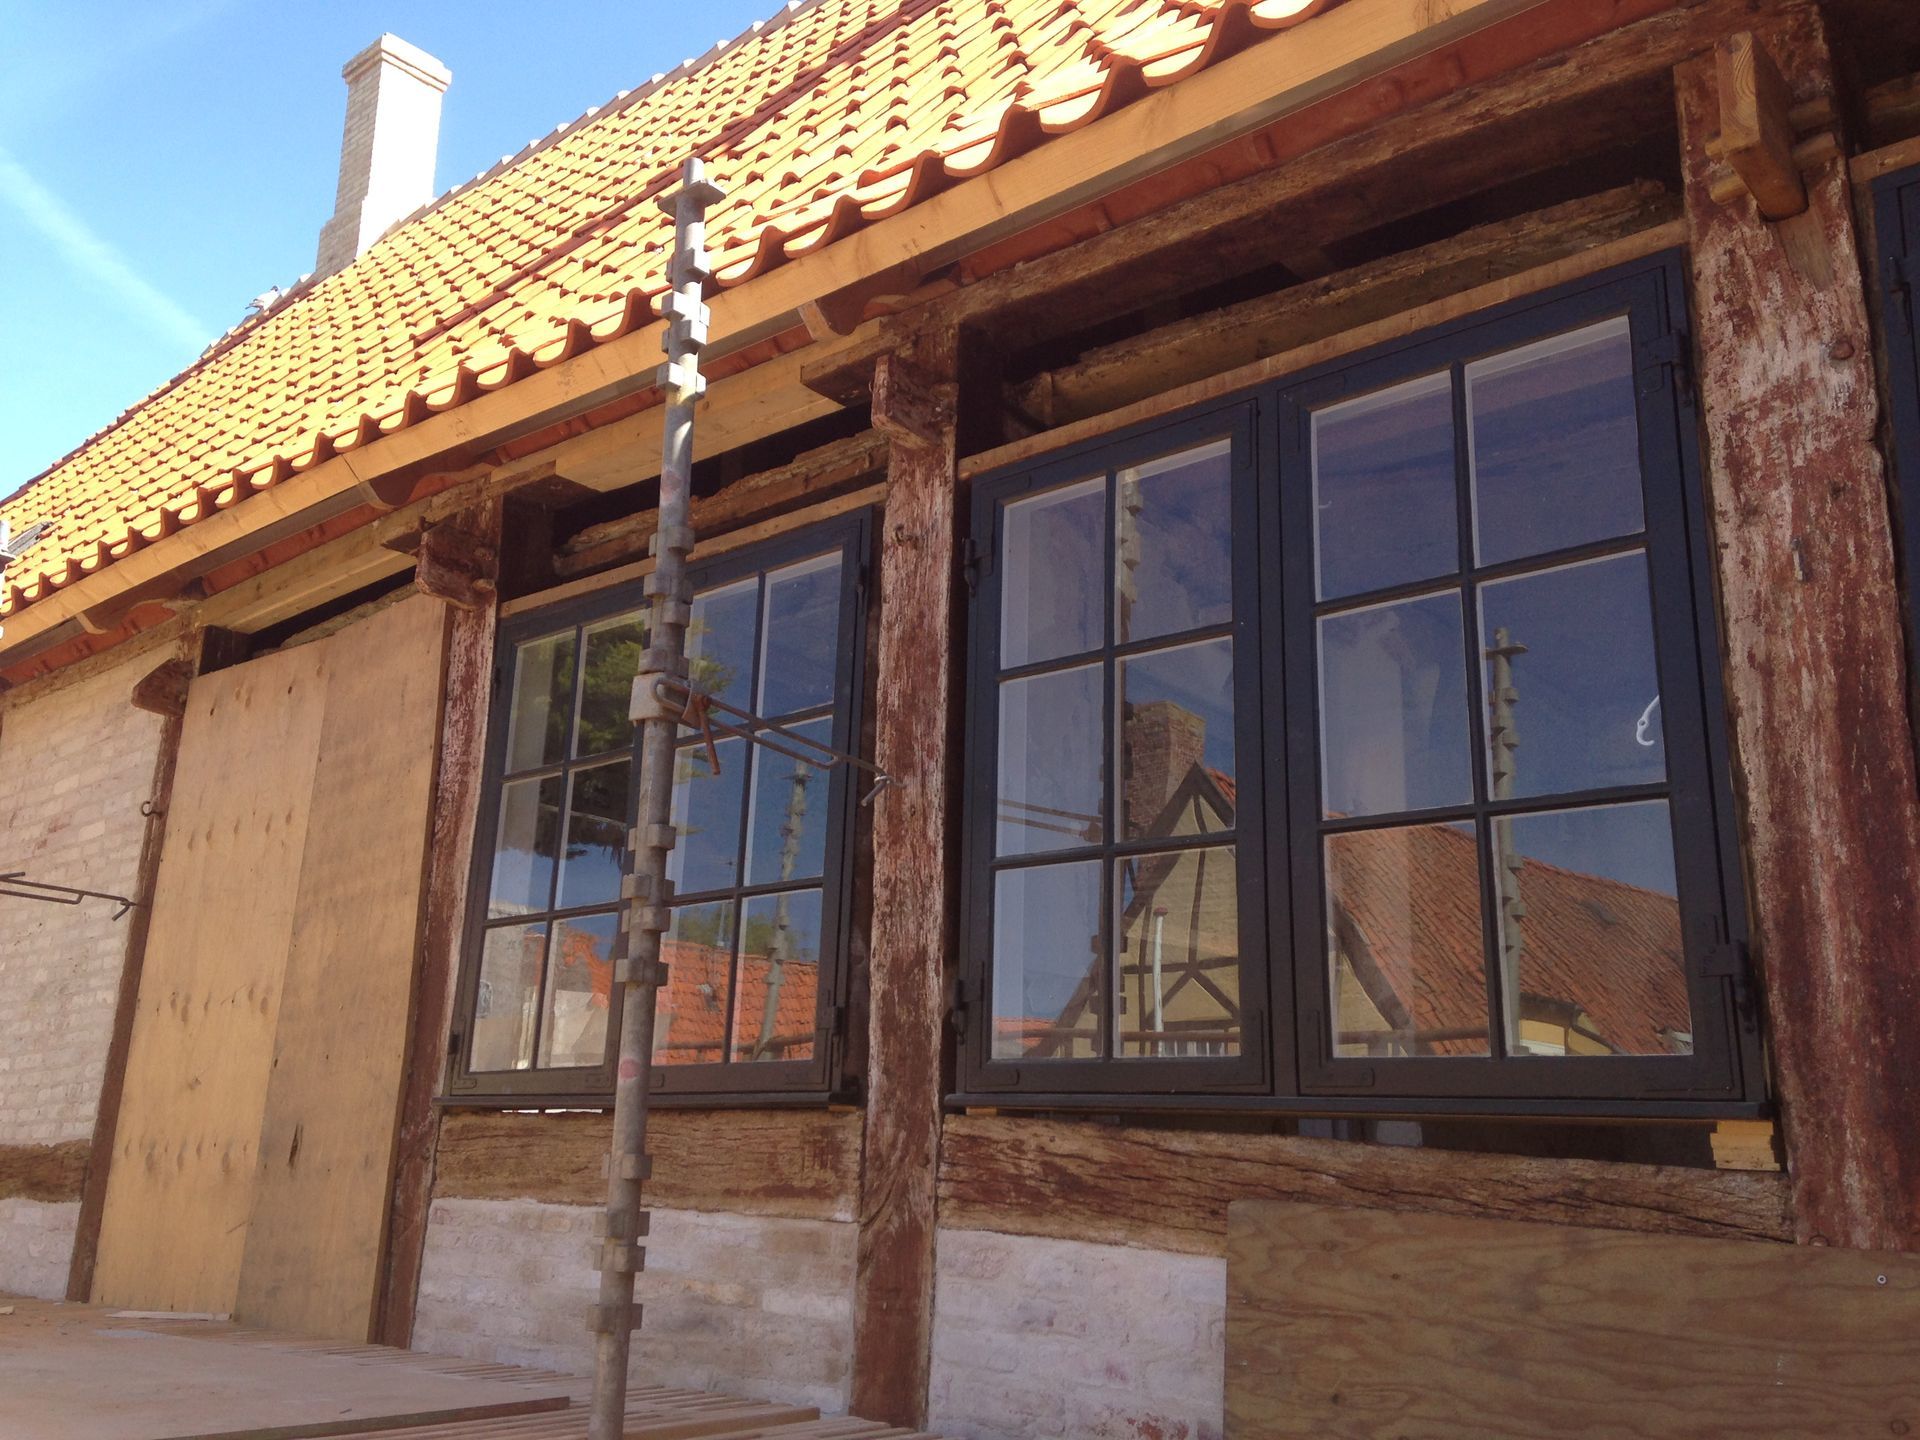 Foto af nyindsatte vinduer i gammelt bindingsværkshus